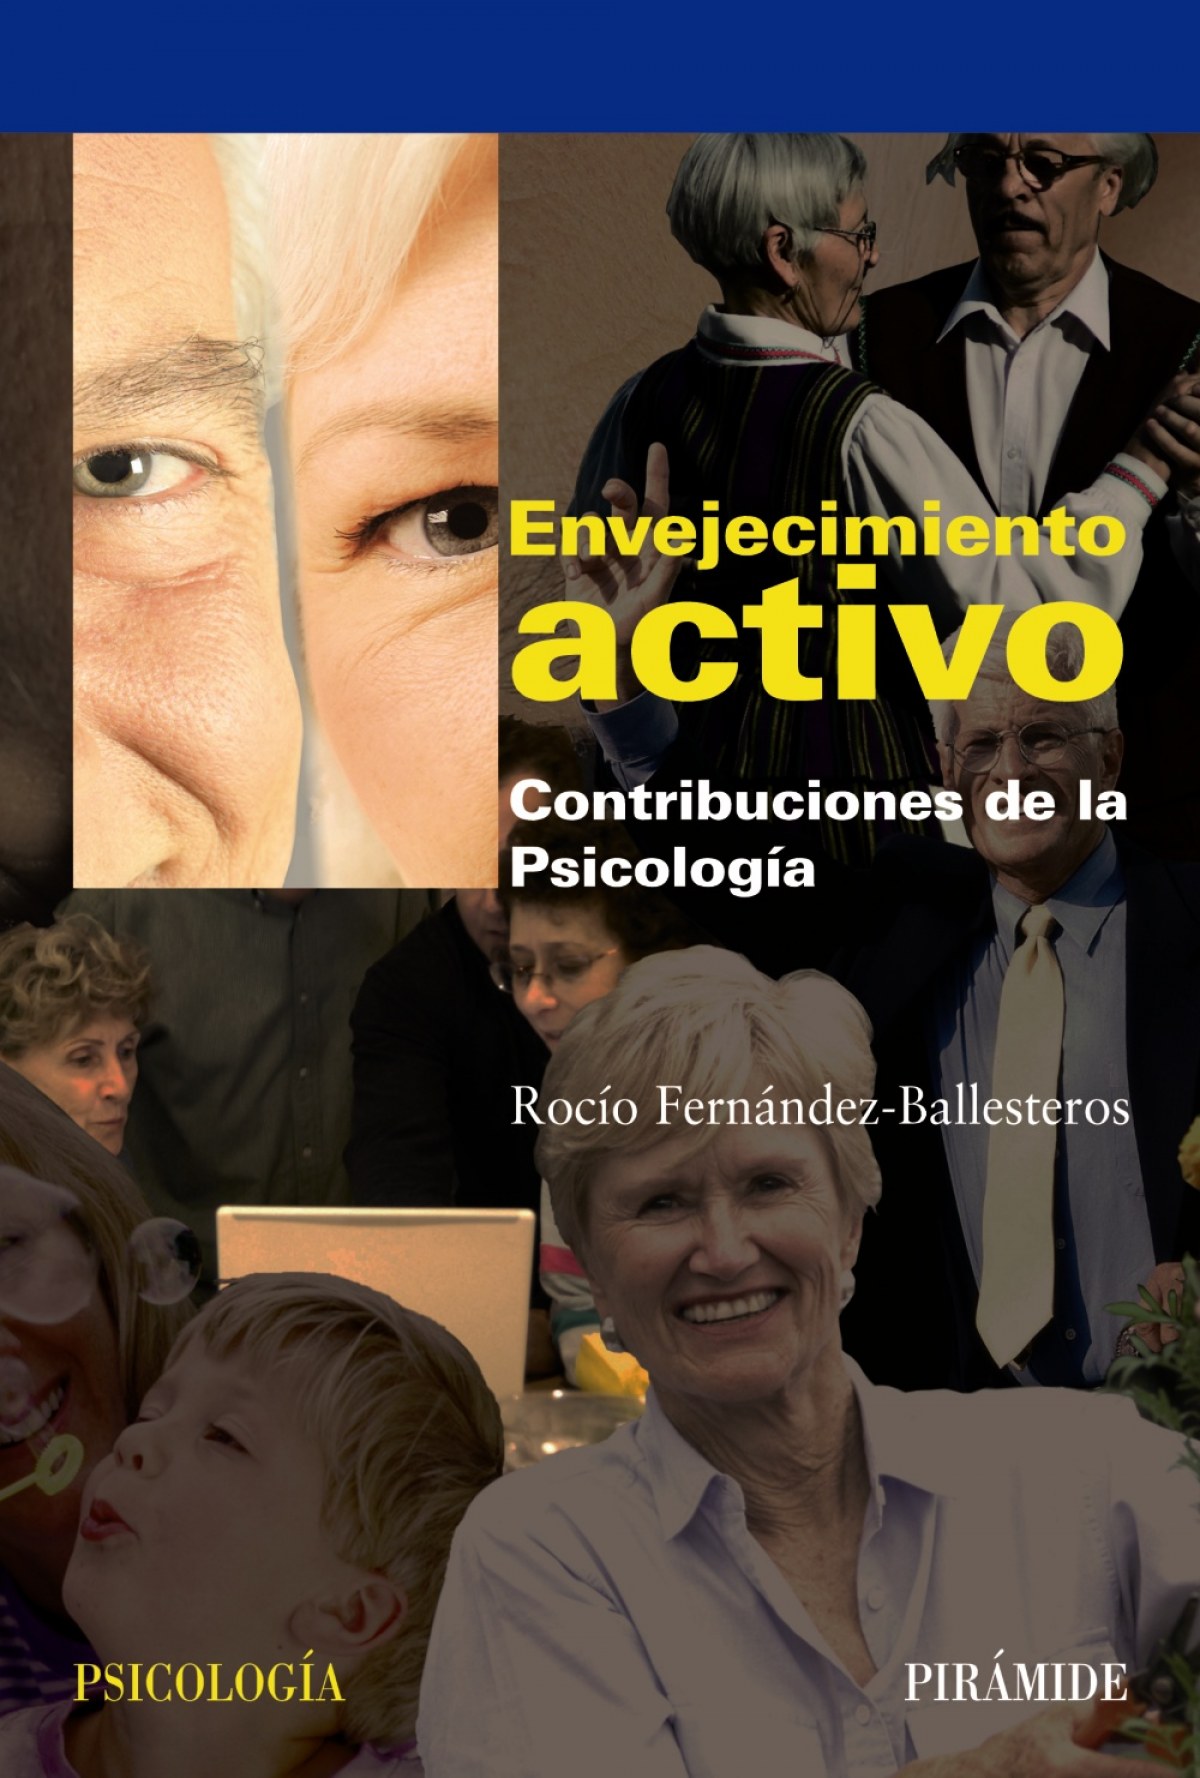 ENVEJECIMIENTO ACTIVO.(PSICOLOGIA) Contribuciones de la psicología - Fernández-Ballesteros, Rocío